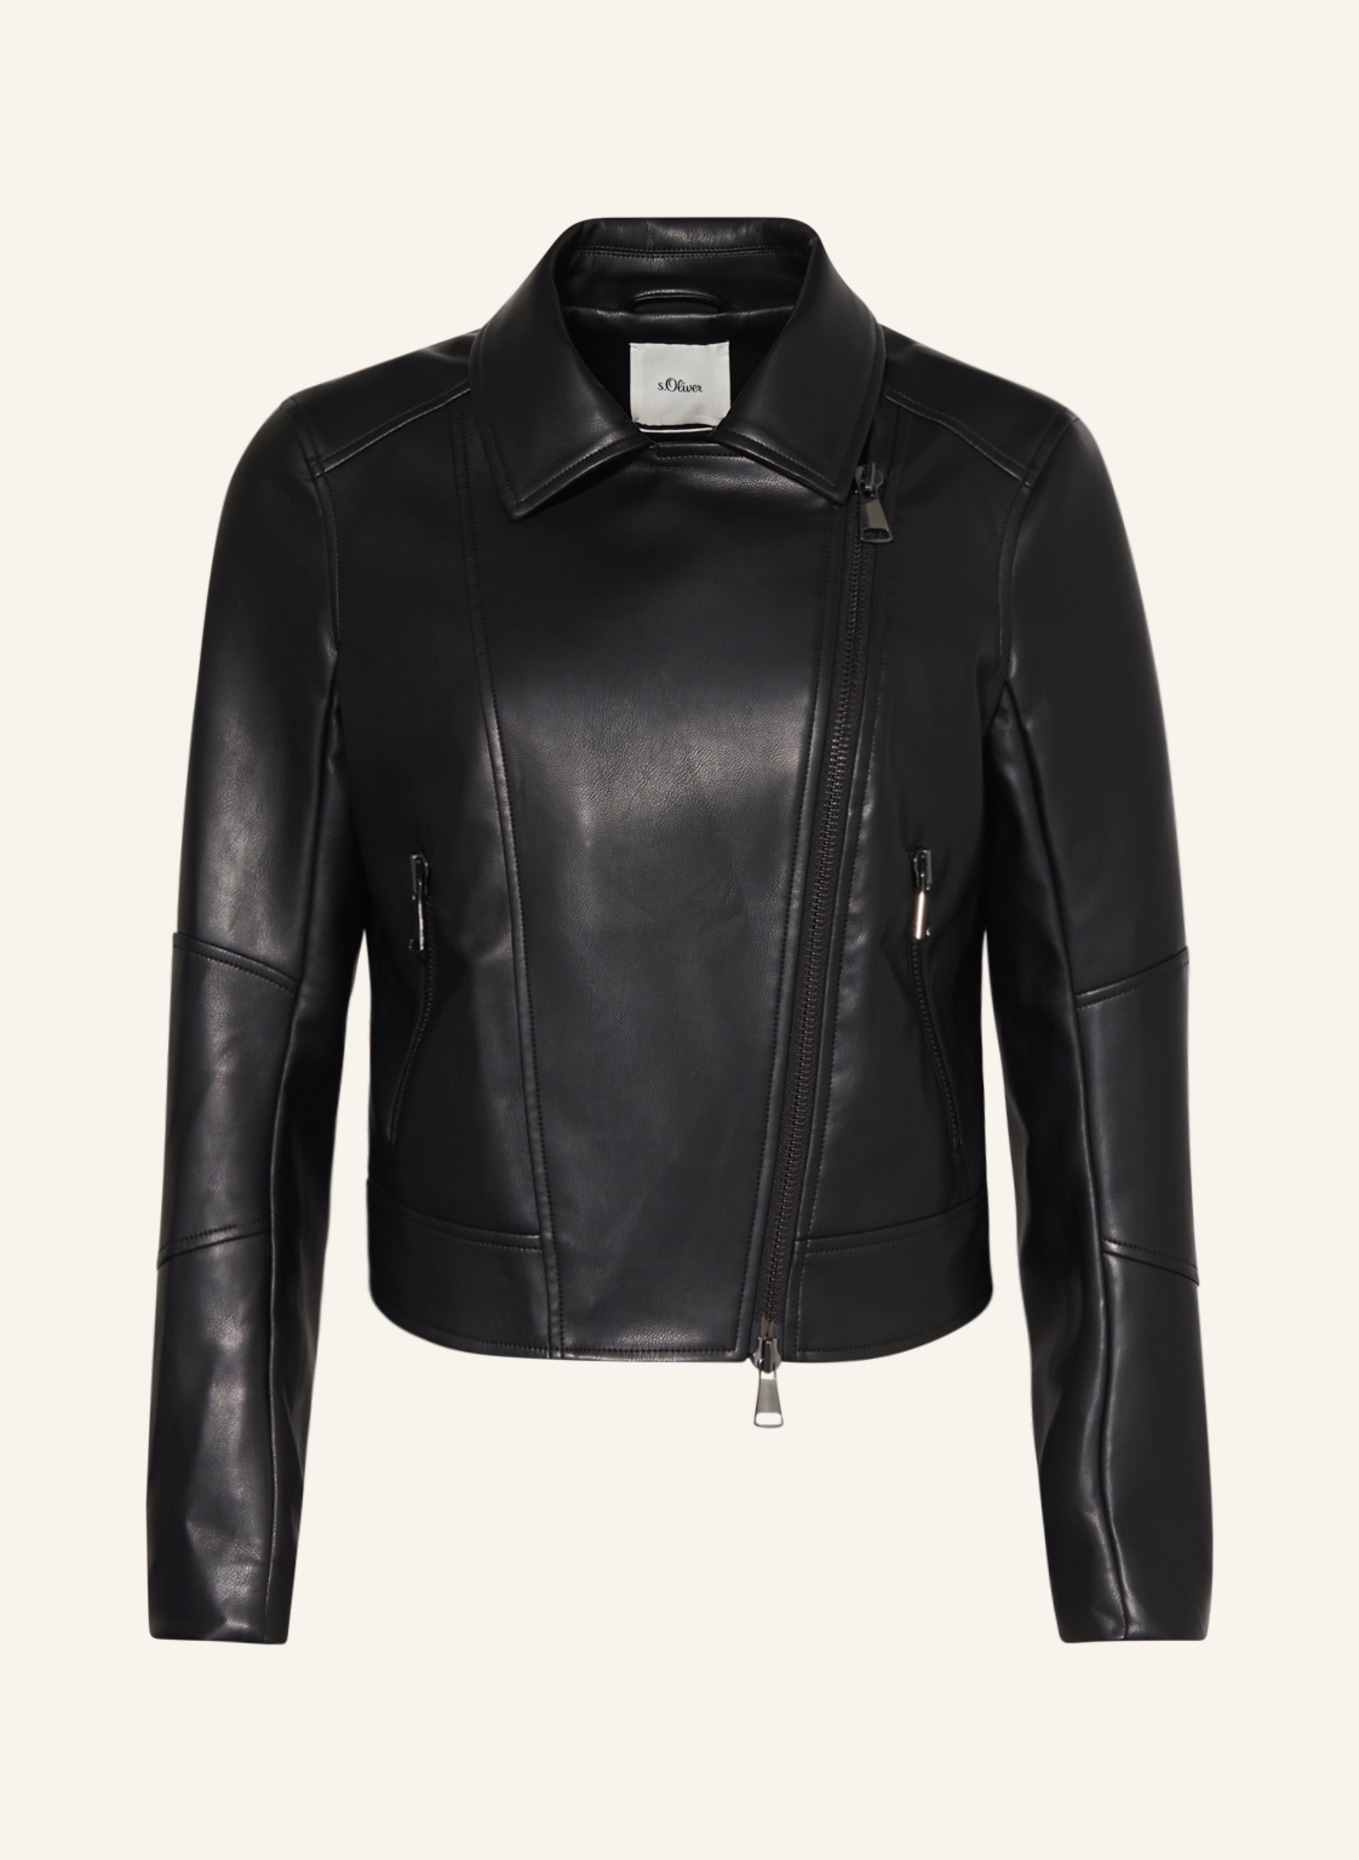 s.Oliver BLACK LABEL Biker jacket in leather look, Color: BLACK (Image 1)